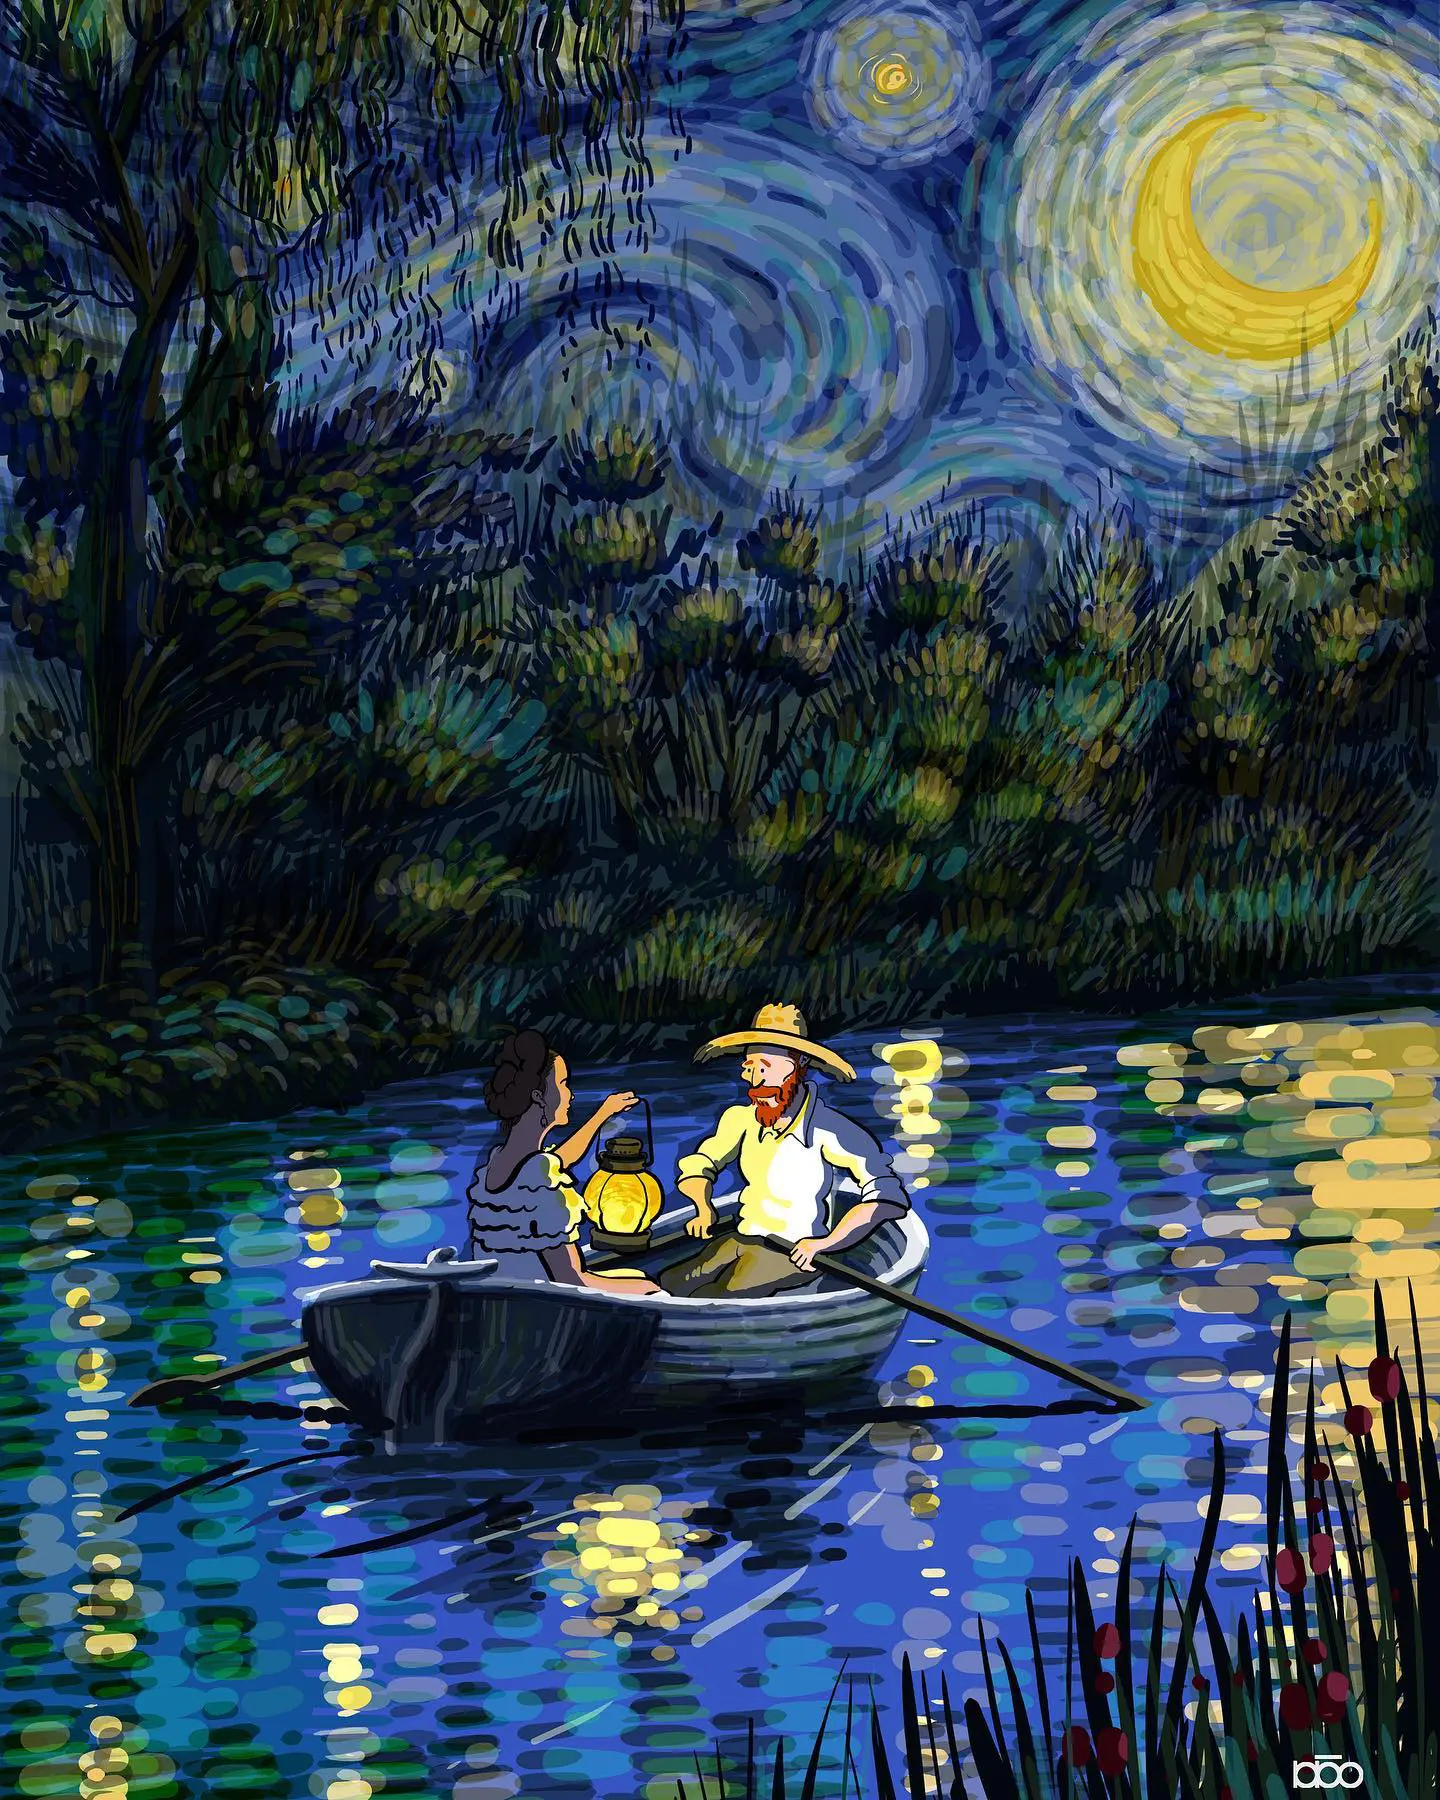 Đời đặc sắc của Van Gogh, thử tưởng tượng họa sĩ đại tài sống trong một thế giới hoạt hình? - Ảnh 2.